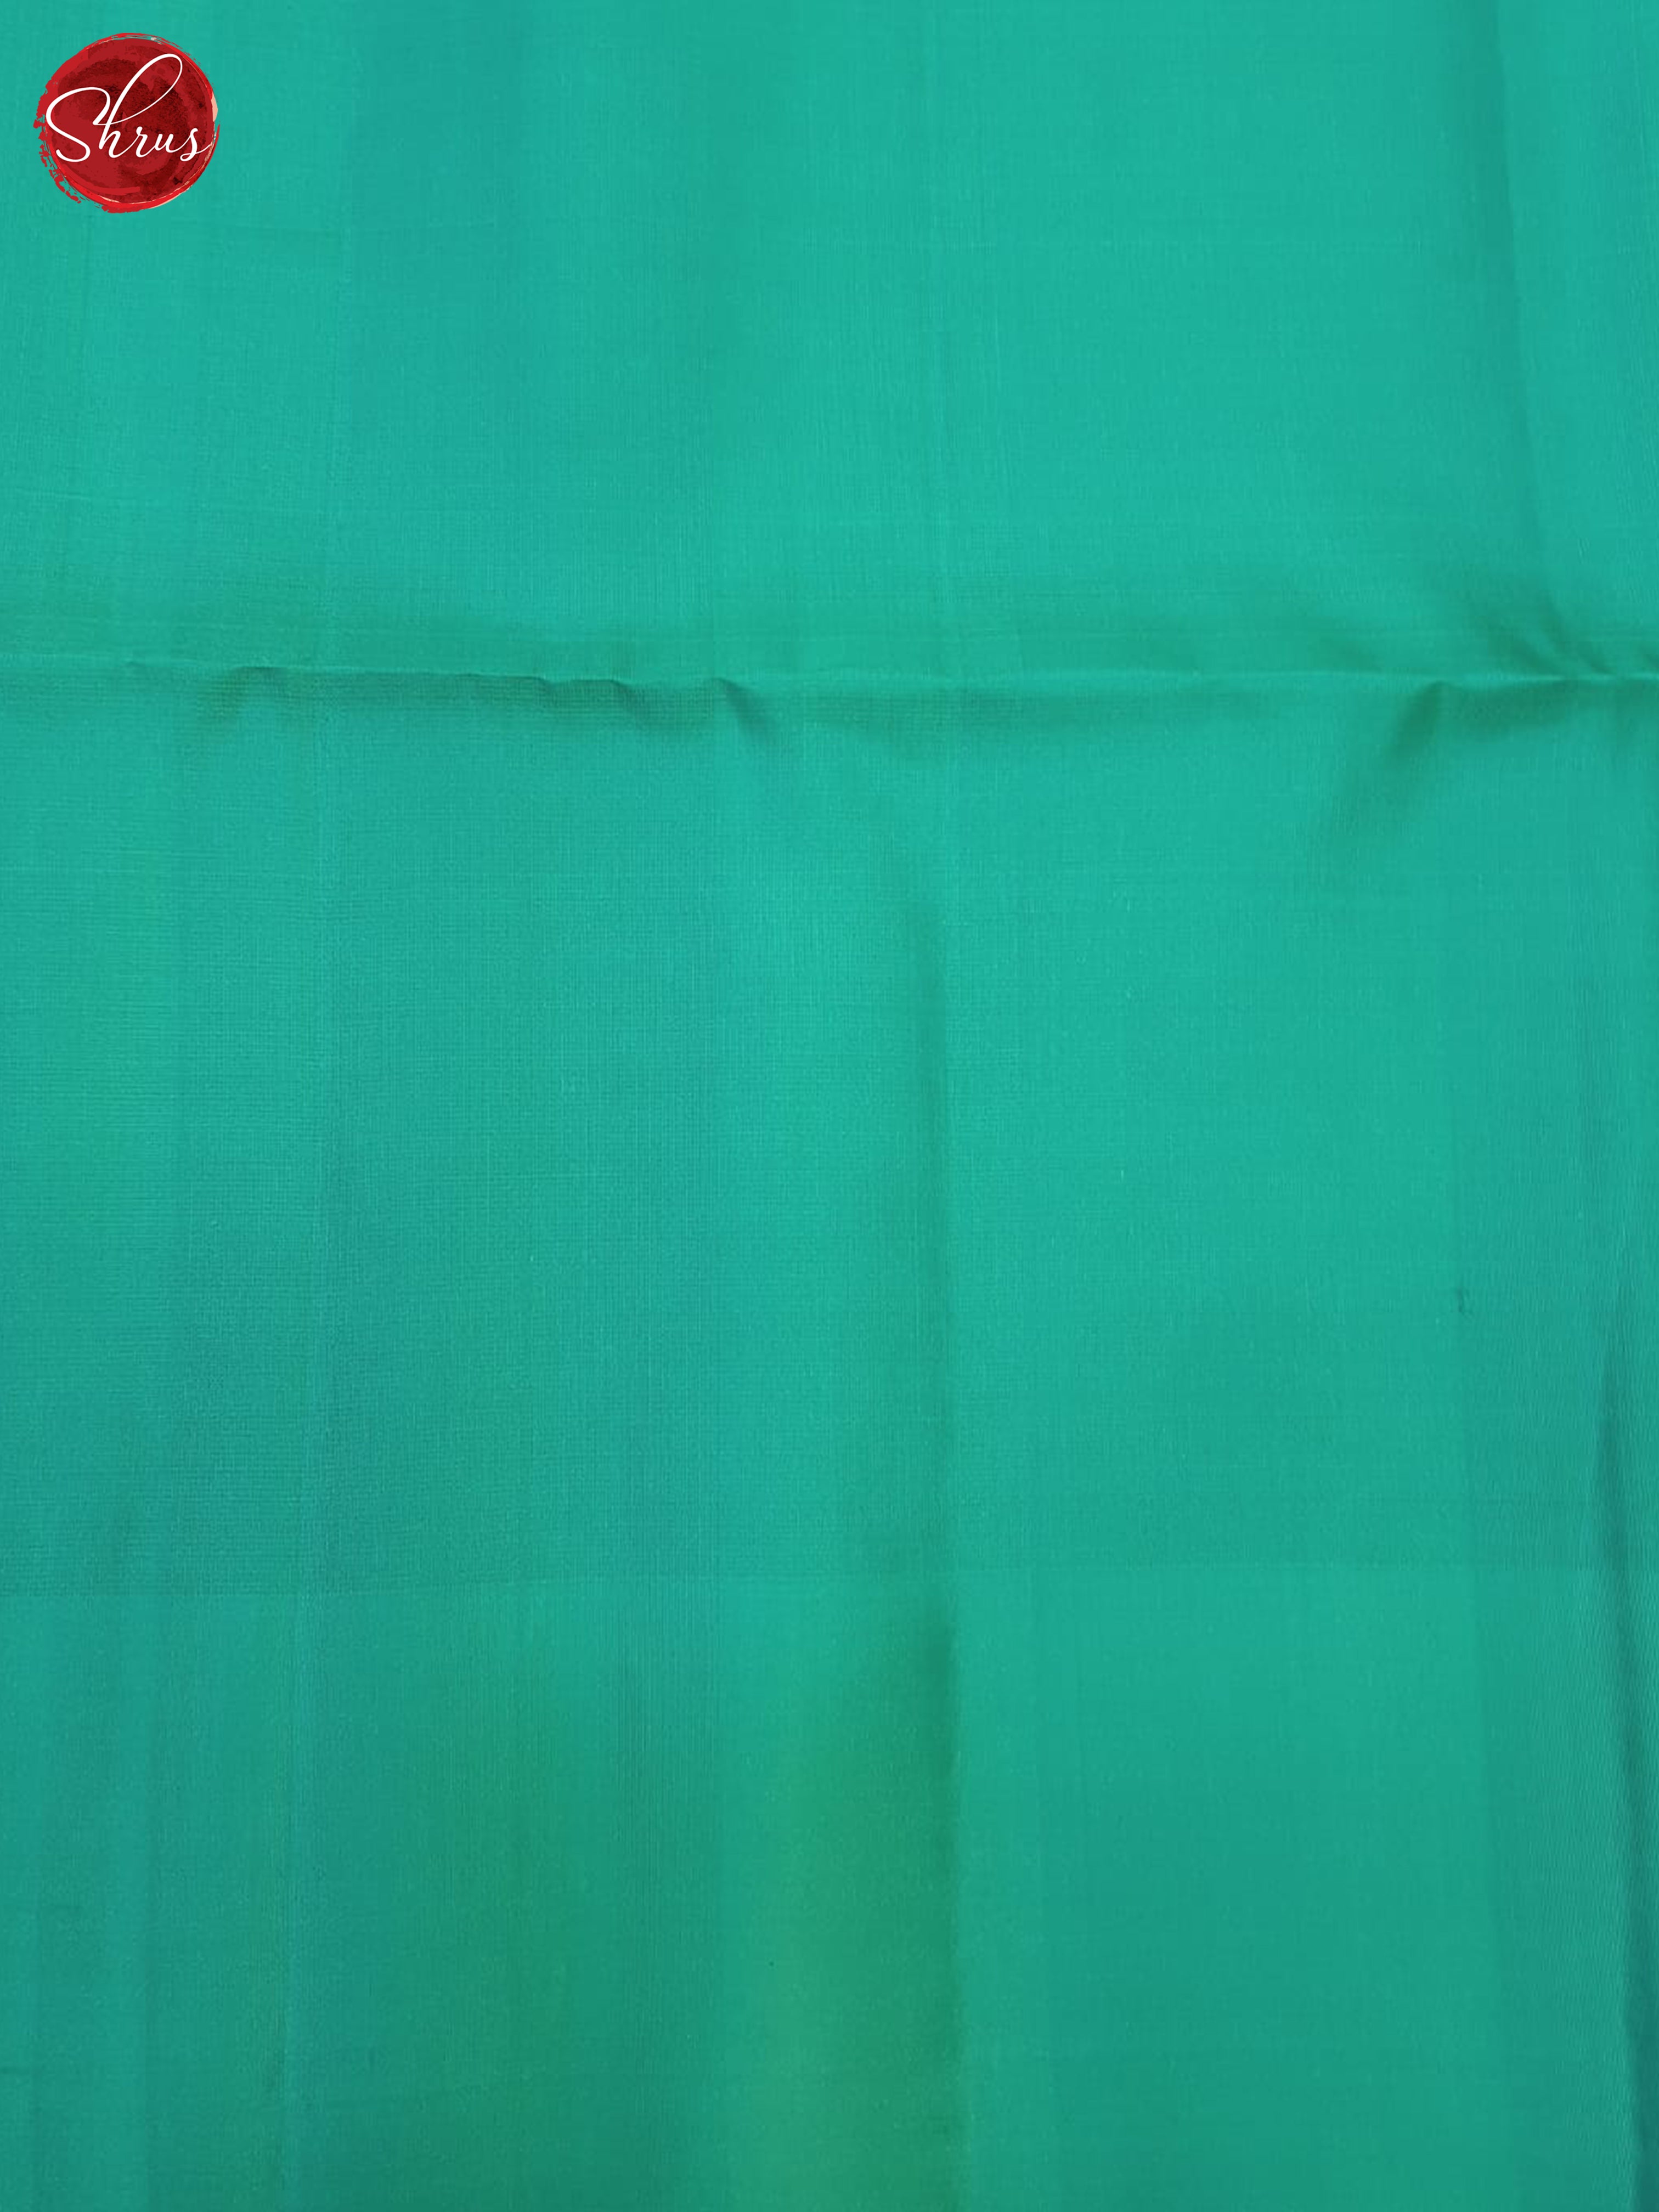 Green And Blue- Soft Silk Saree - Shop on ShrusEternity.com